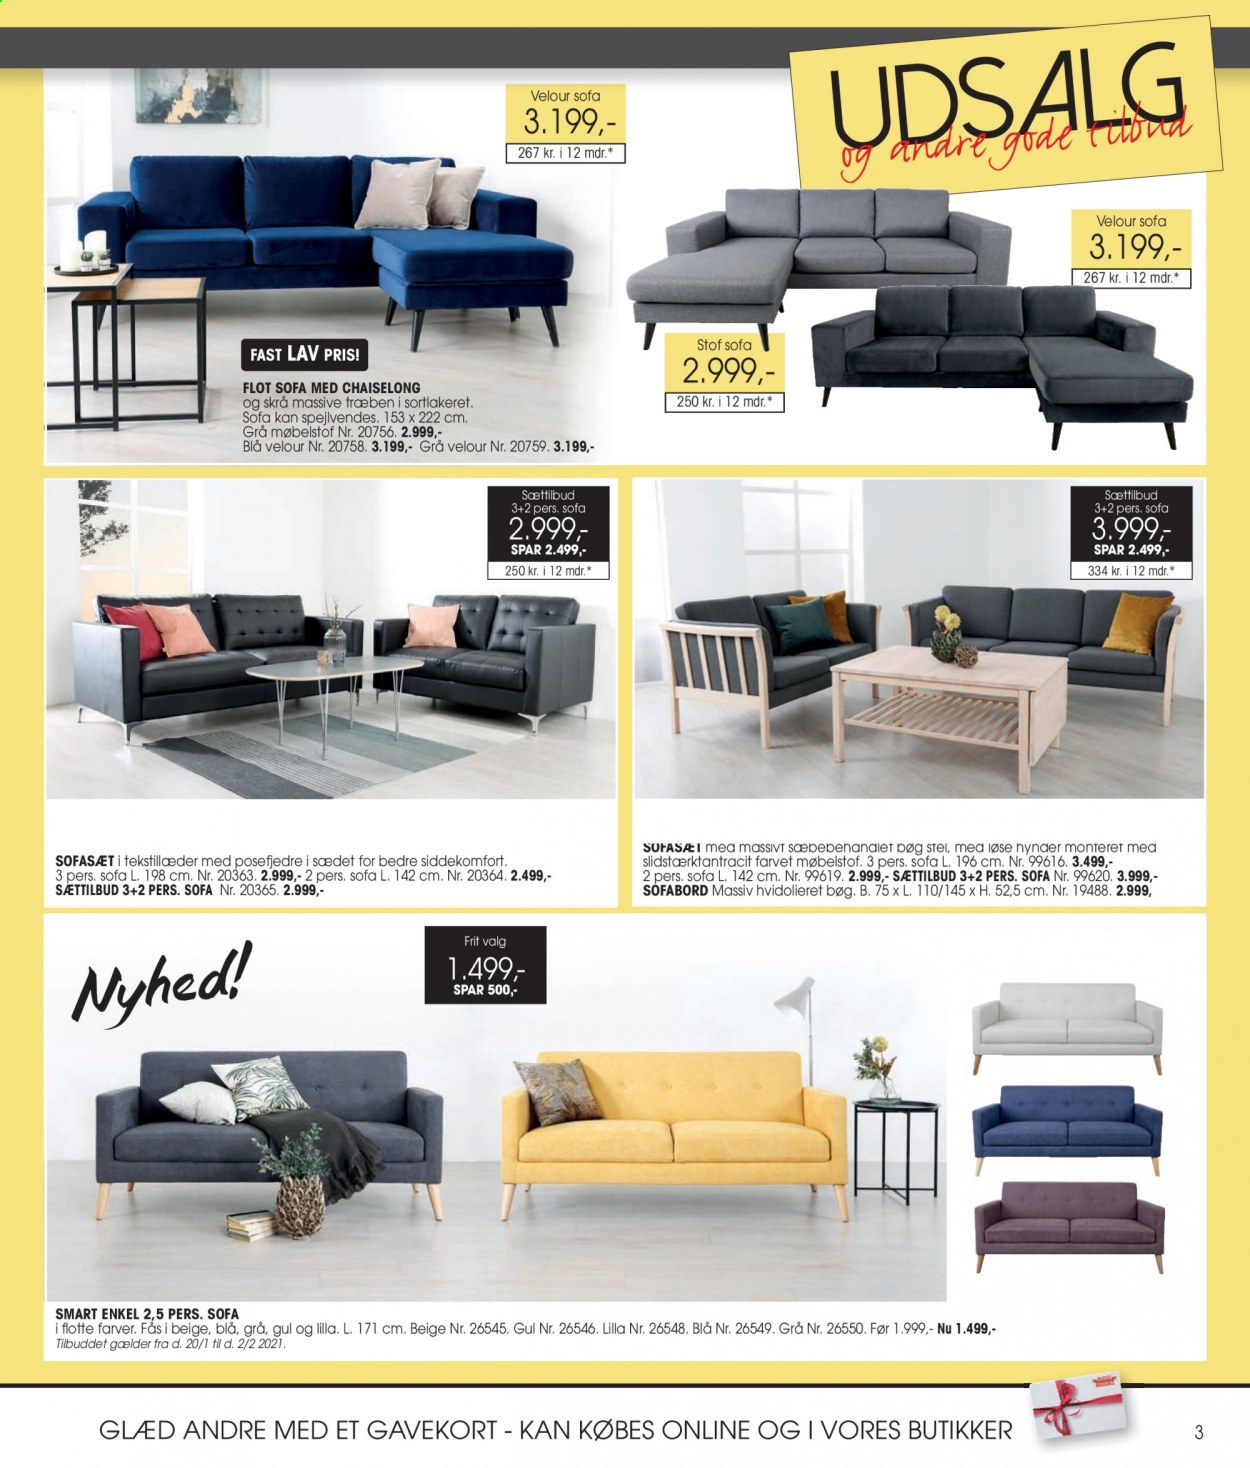 thumbnail - Daells Bolighus tilbud  - 27.1.2021 - 2.2.2021 - tilbudsprodukter - sofa, sofasæt, sofabord. Side 3.